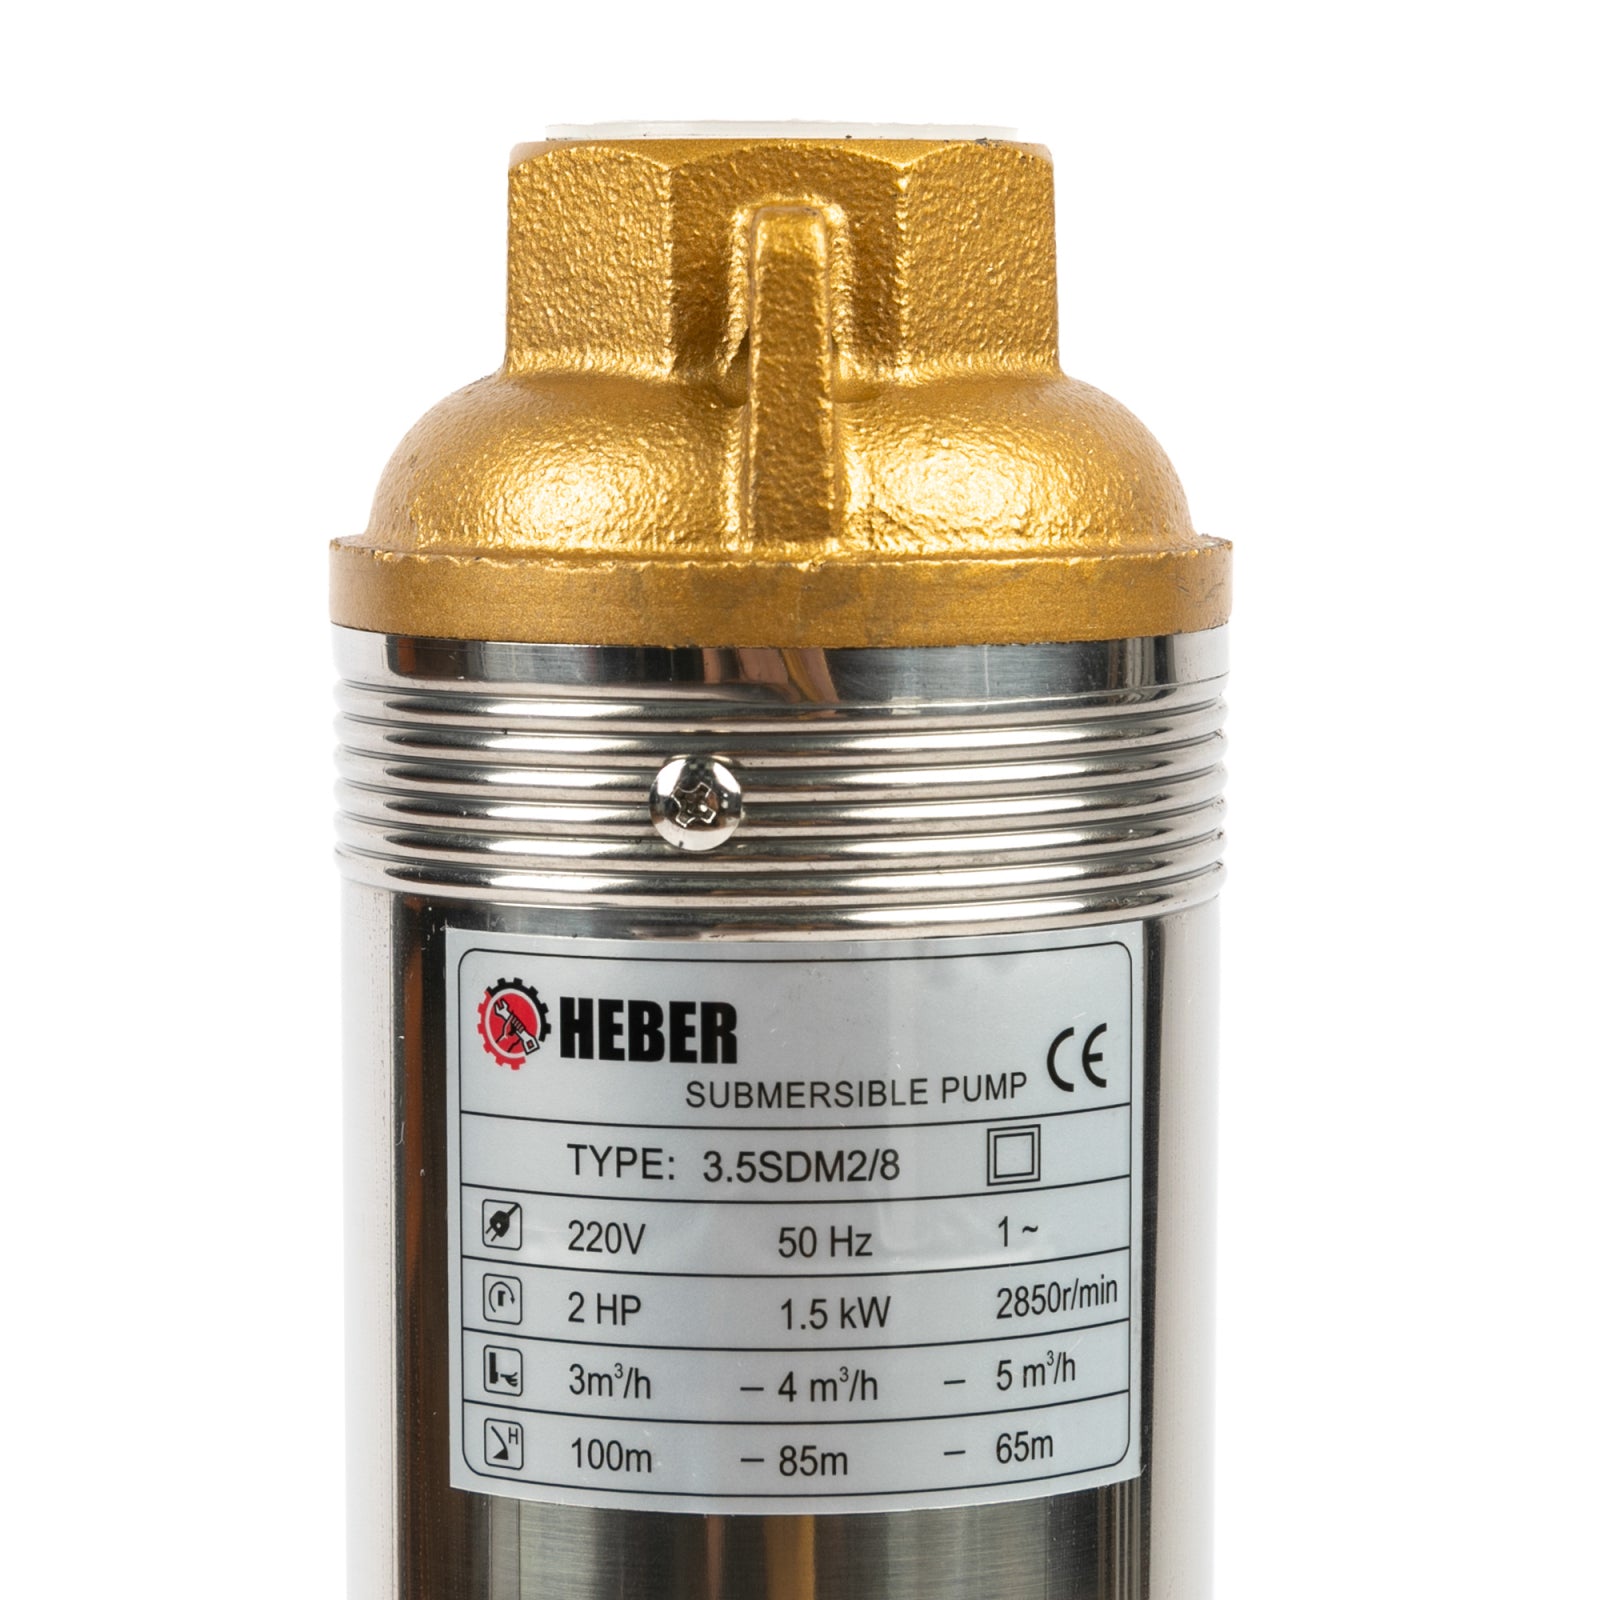 Pompa sumbersibila multietajata, Heber® 3.5SDM 2/8, 1500W, cu 8 turbine, cablu de alimentare 15 metri hbr-1609